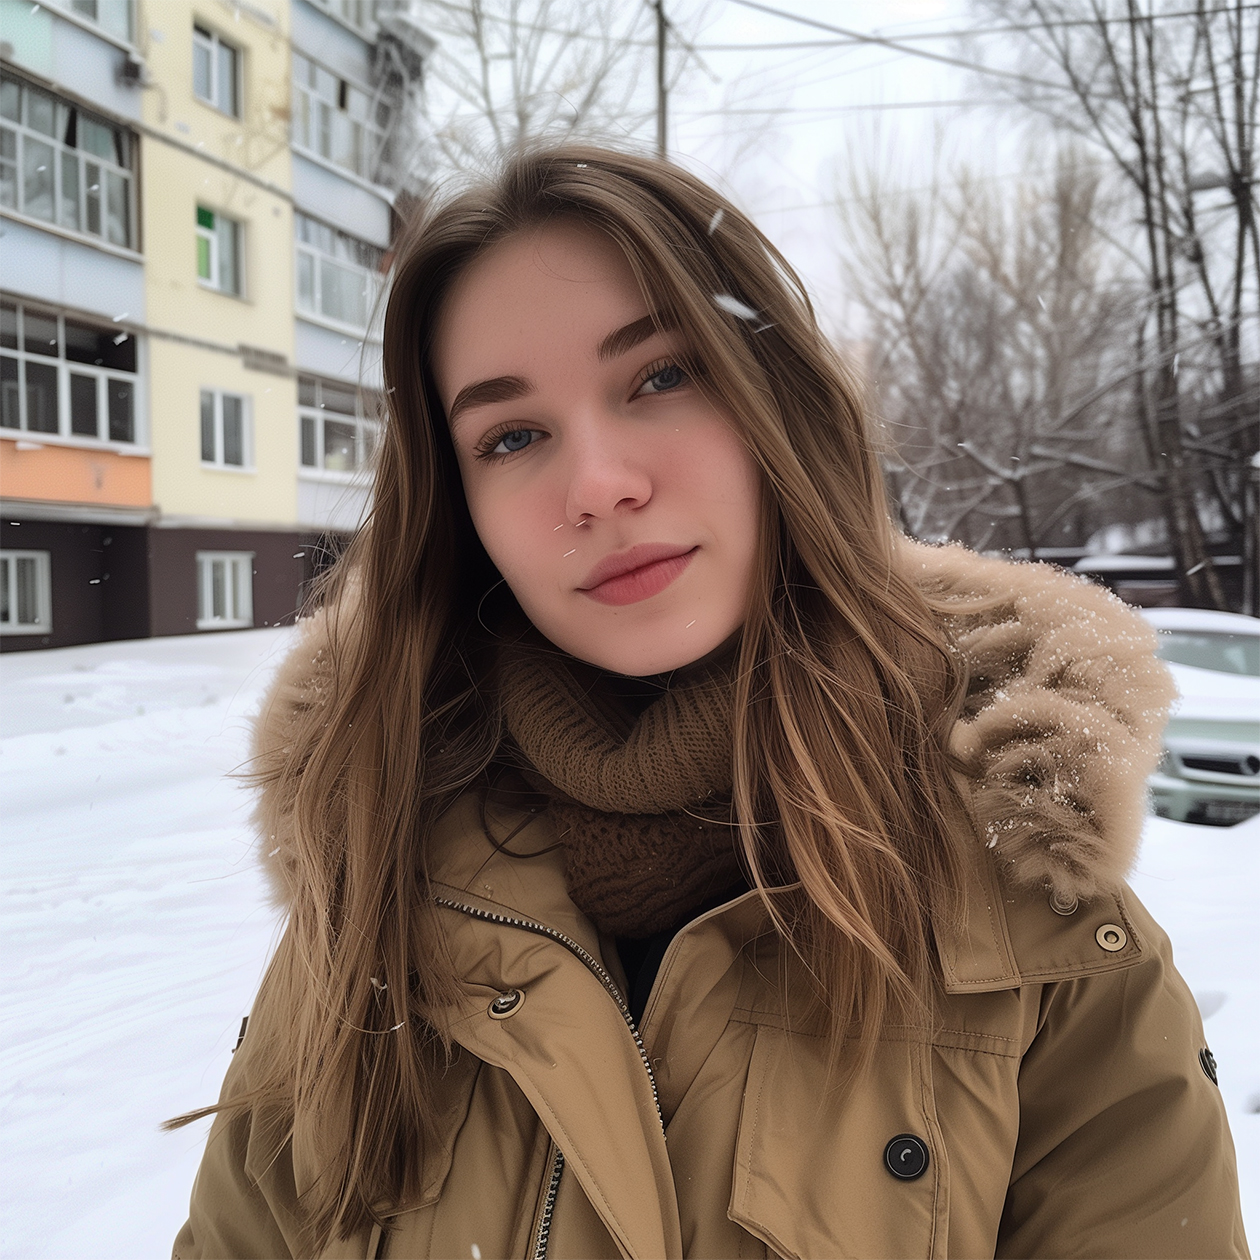 Сгенерированное изображение молодой женщины в Москве в стиле фото на Айфон, выложенного в соцсети несколько лет назад